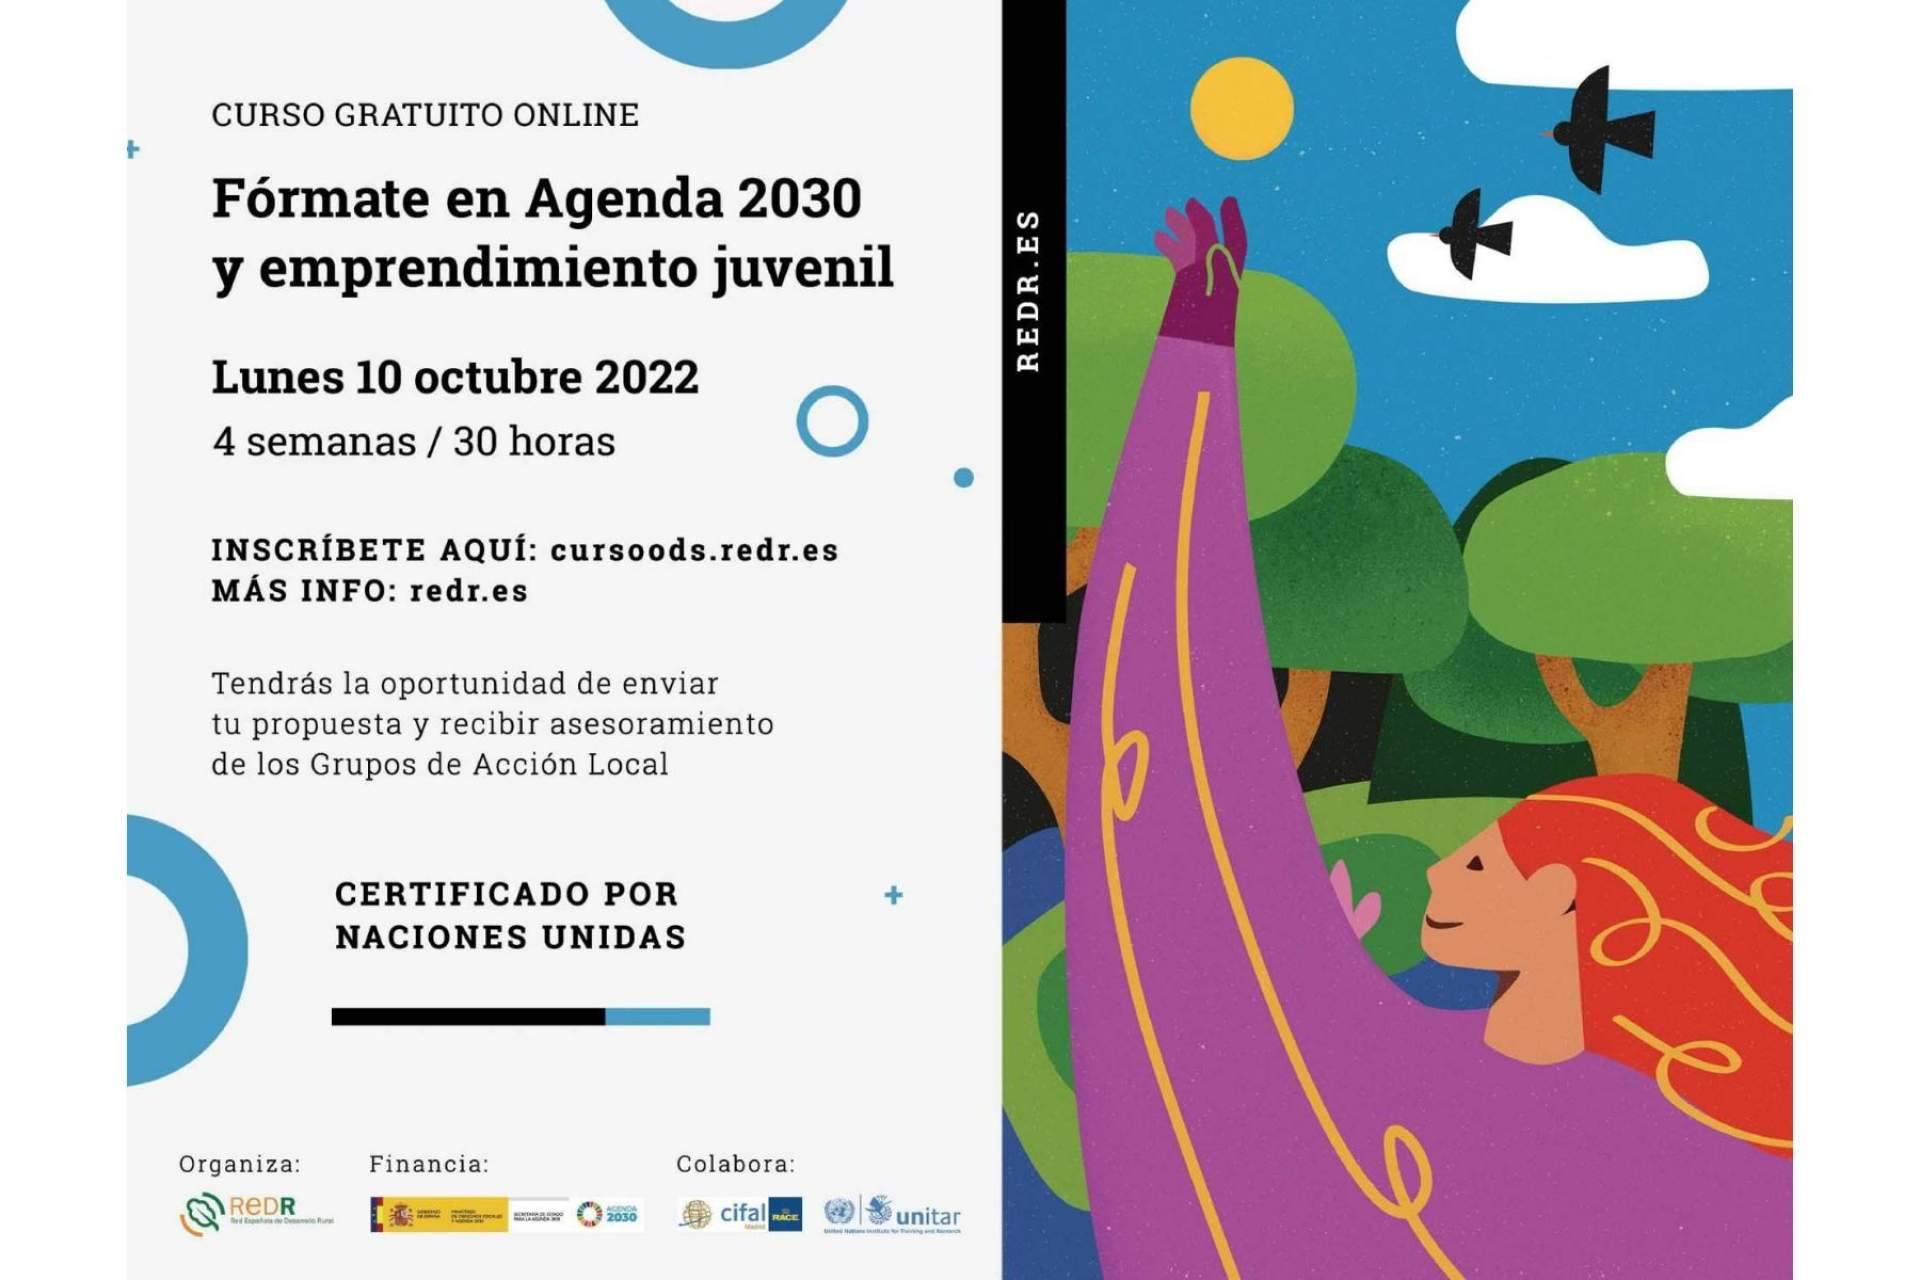 La Red Española de Desarrollo Rural | REDR impulsa el emprendimiento juvenil y la Agenda 2030 en el medio rural con el lanzamiento de un nuevo programa formativo online certificado por Naciones Unidas